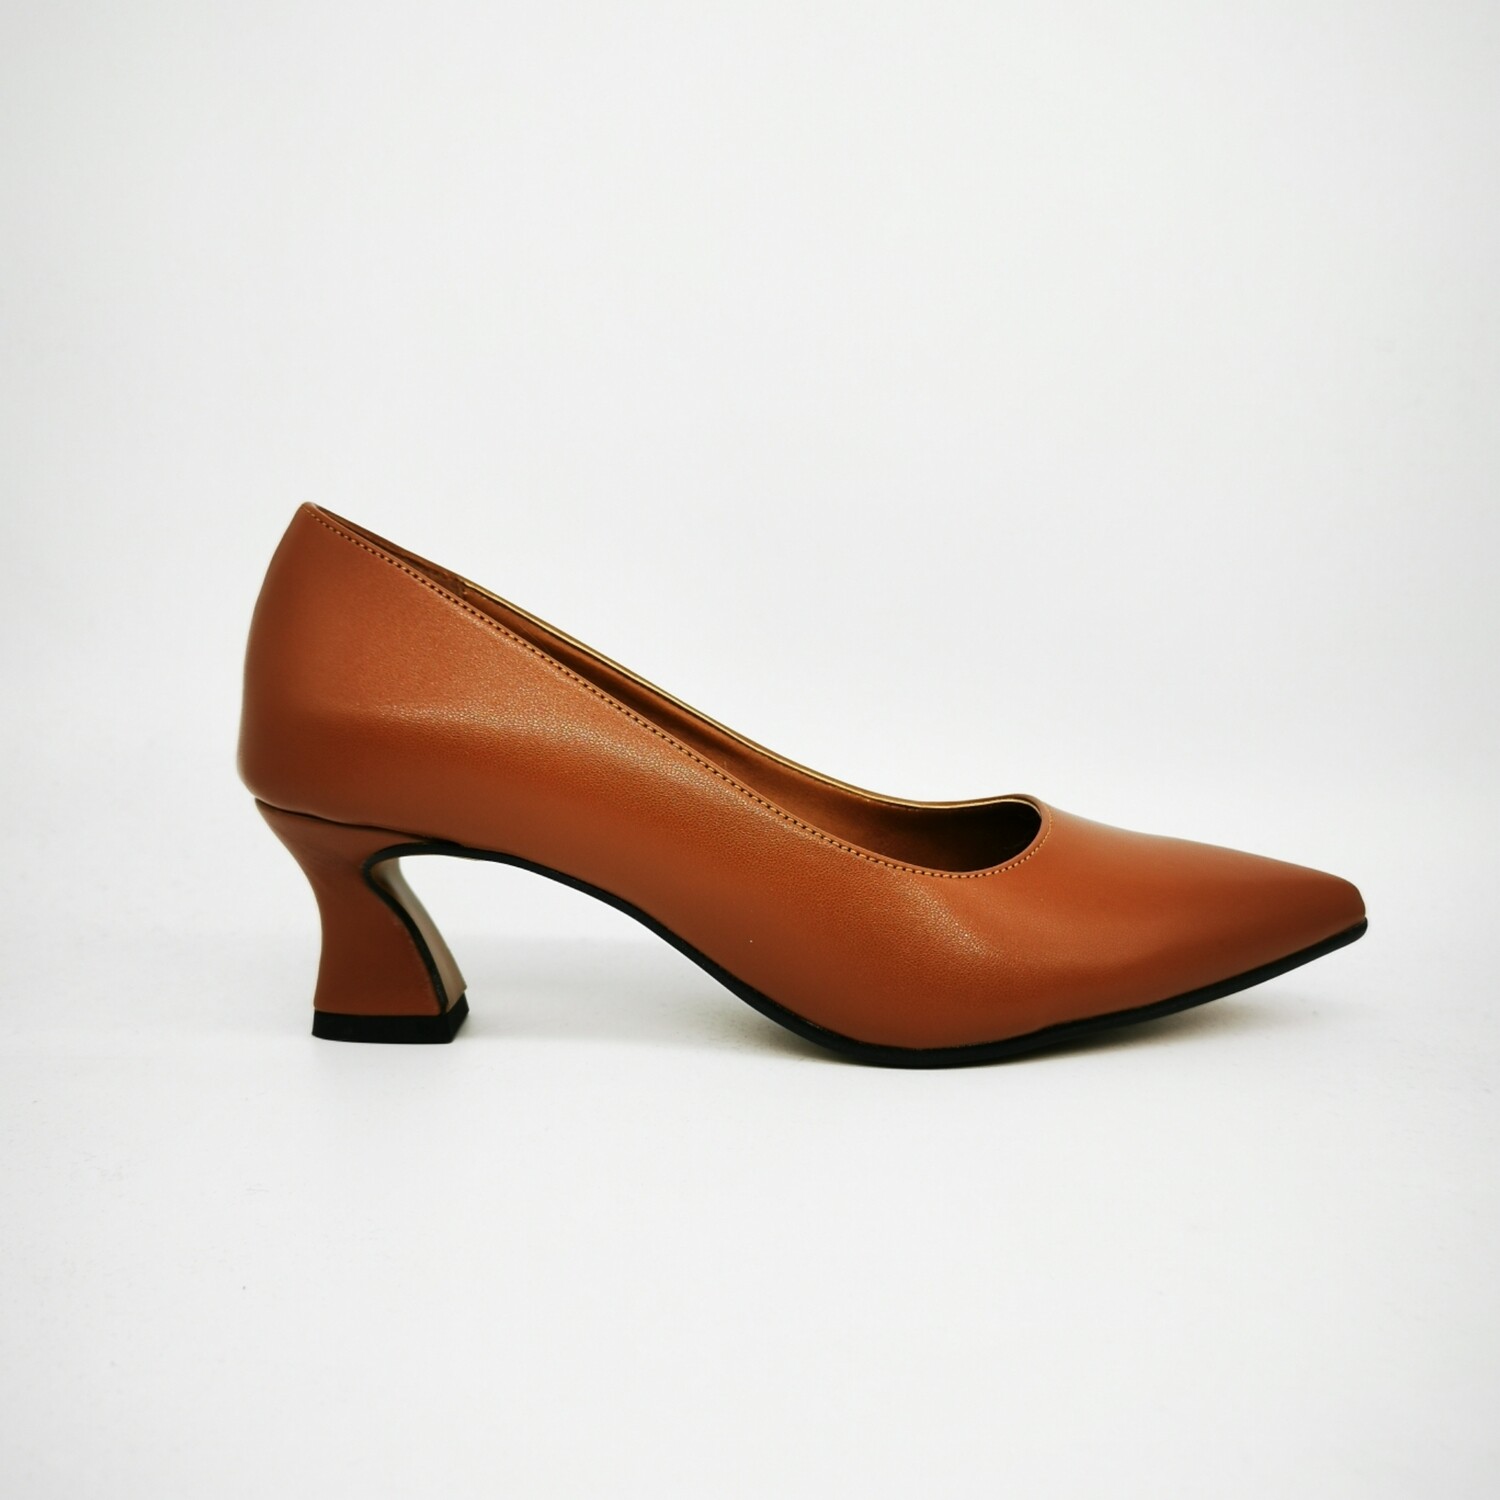 Decollètè Bassi Cuoio Donna tacco svasato 5 cm Colbaffo® Collection scarpe Basse Marrone Made in Italy art. CB028-50, misura: 35